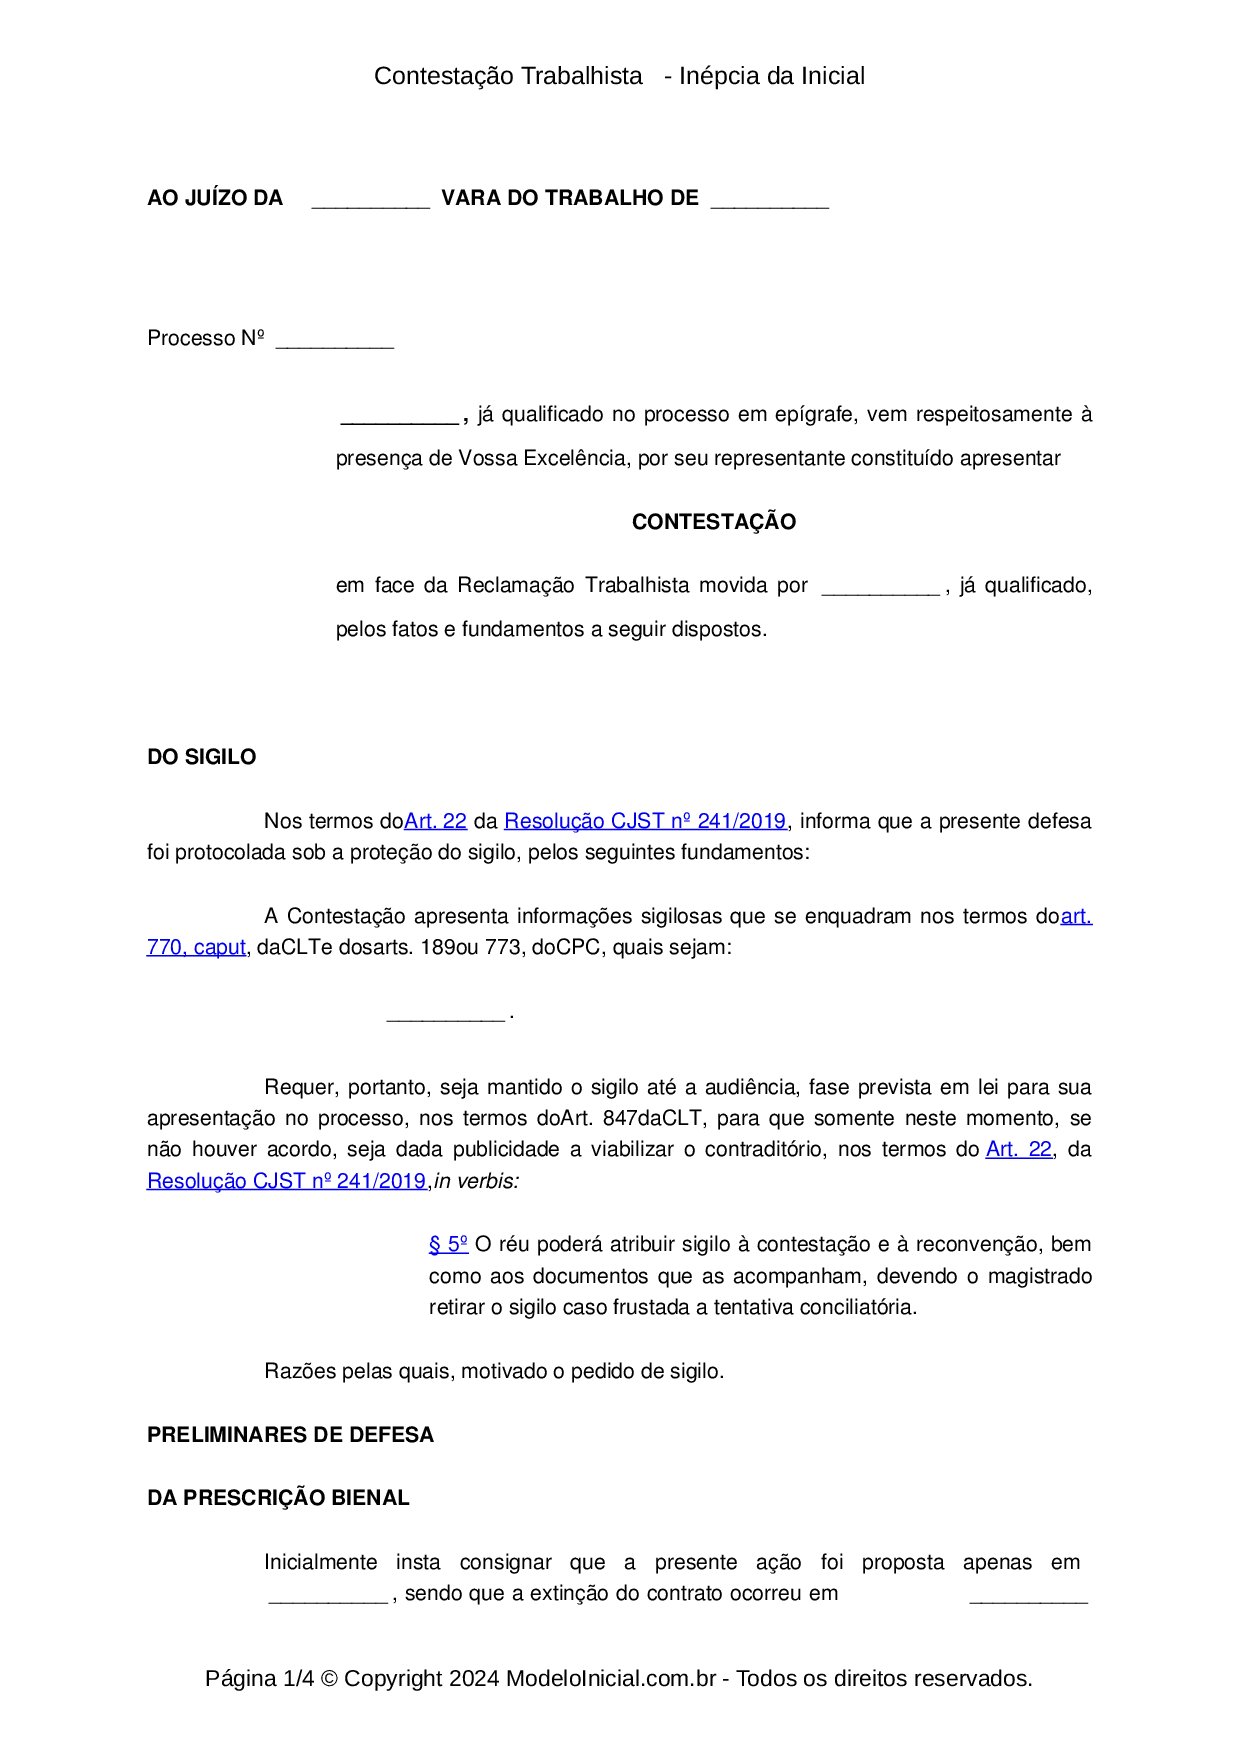 Corsan avalia proposta de negociação trabalhista - Jornal Ibiá